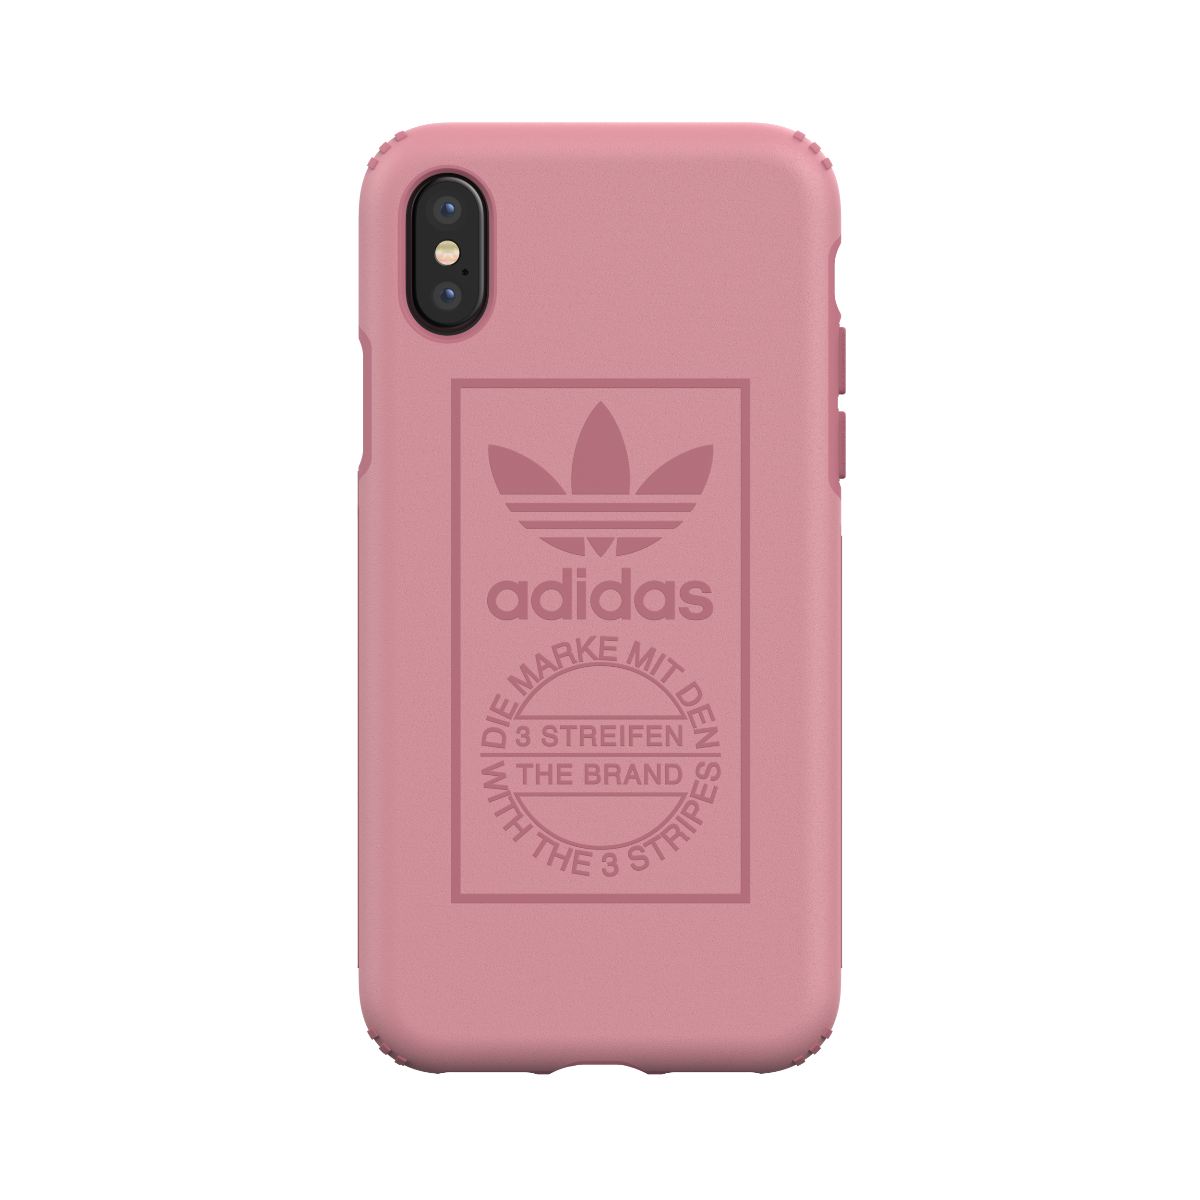 adidas Originals Hard Cover Case Pink iPhone 2 